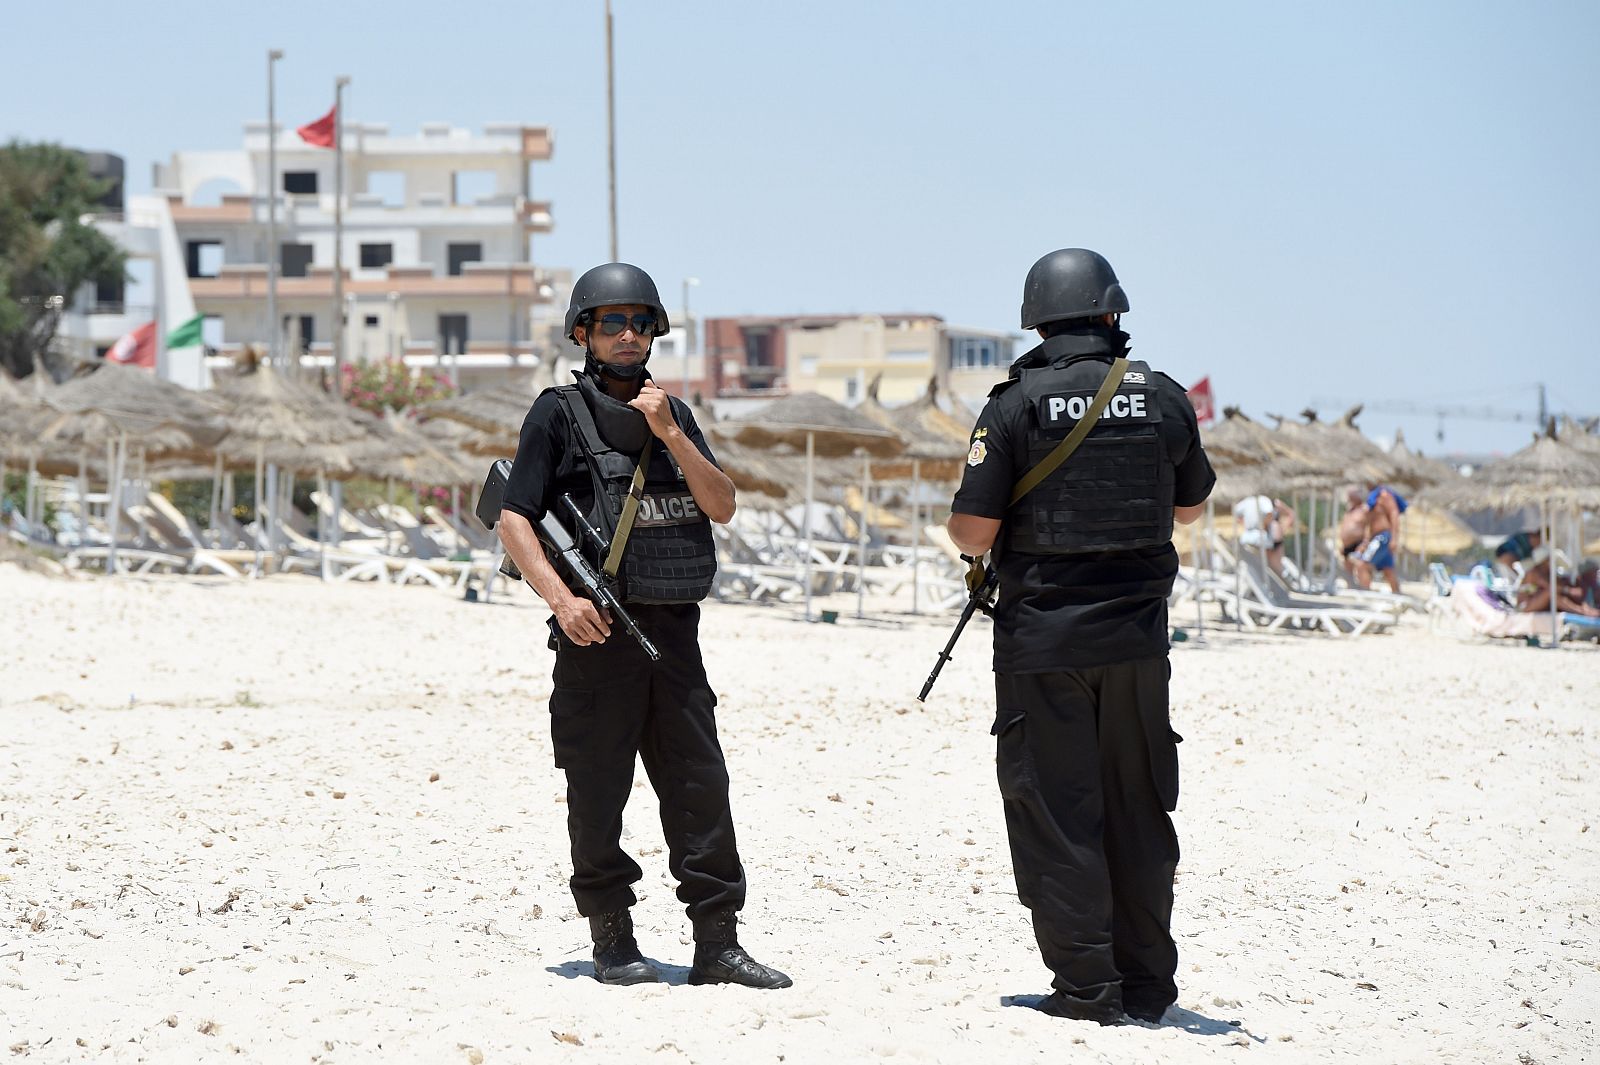 Fotografía de archivo de dos policias patrullando en una playa de Túnez. AFP PHOTO / FETHI BELAID